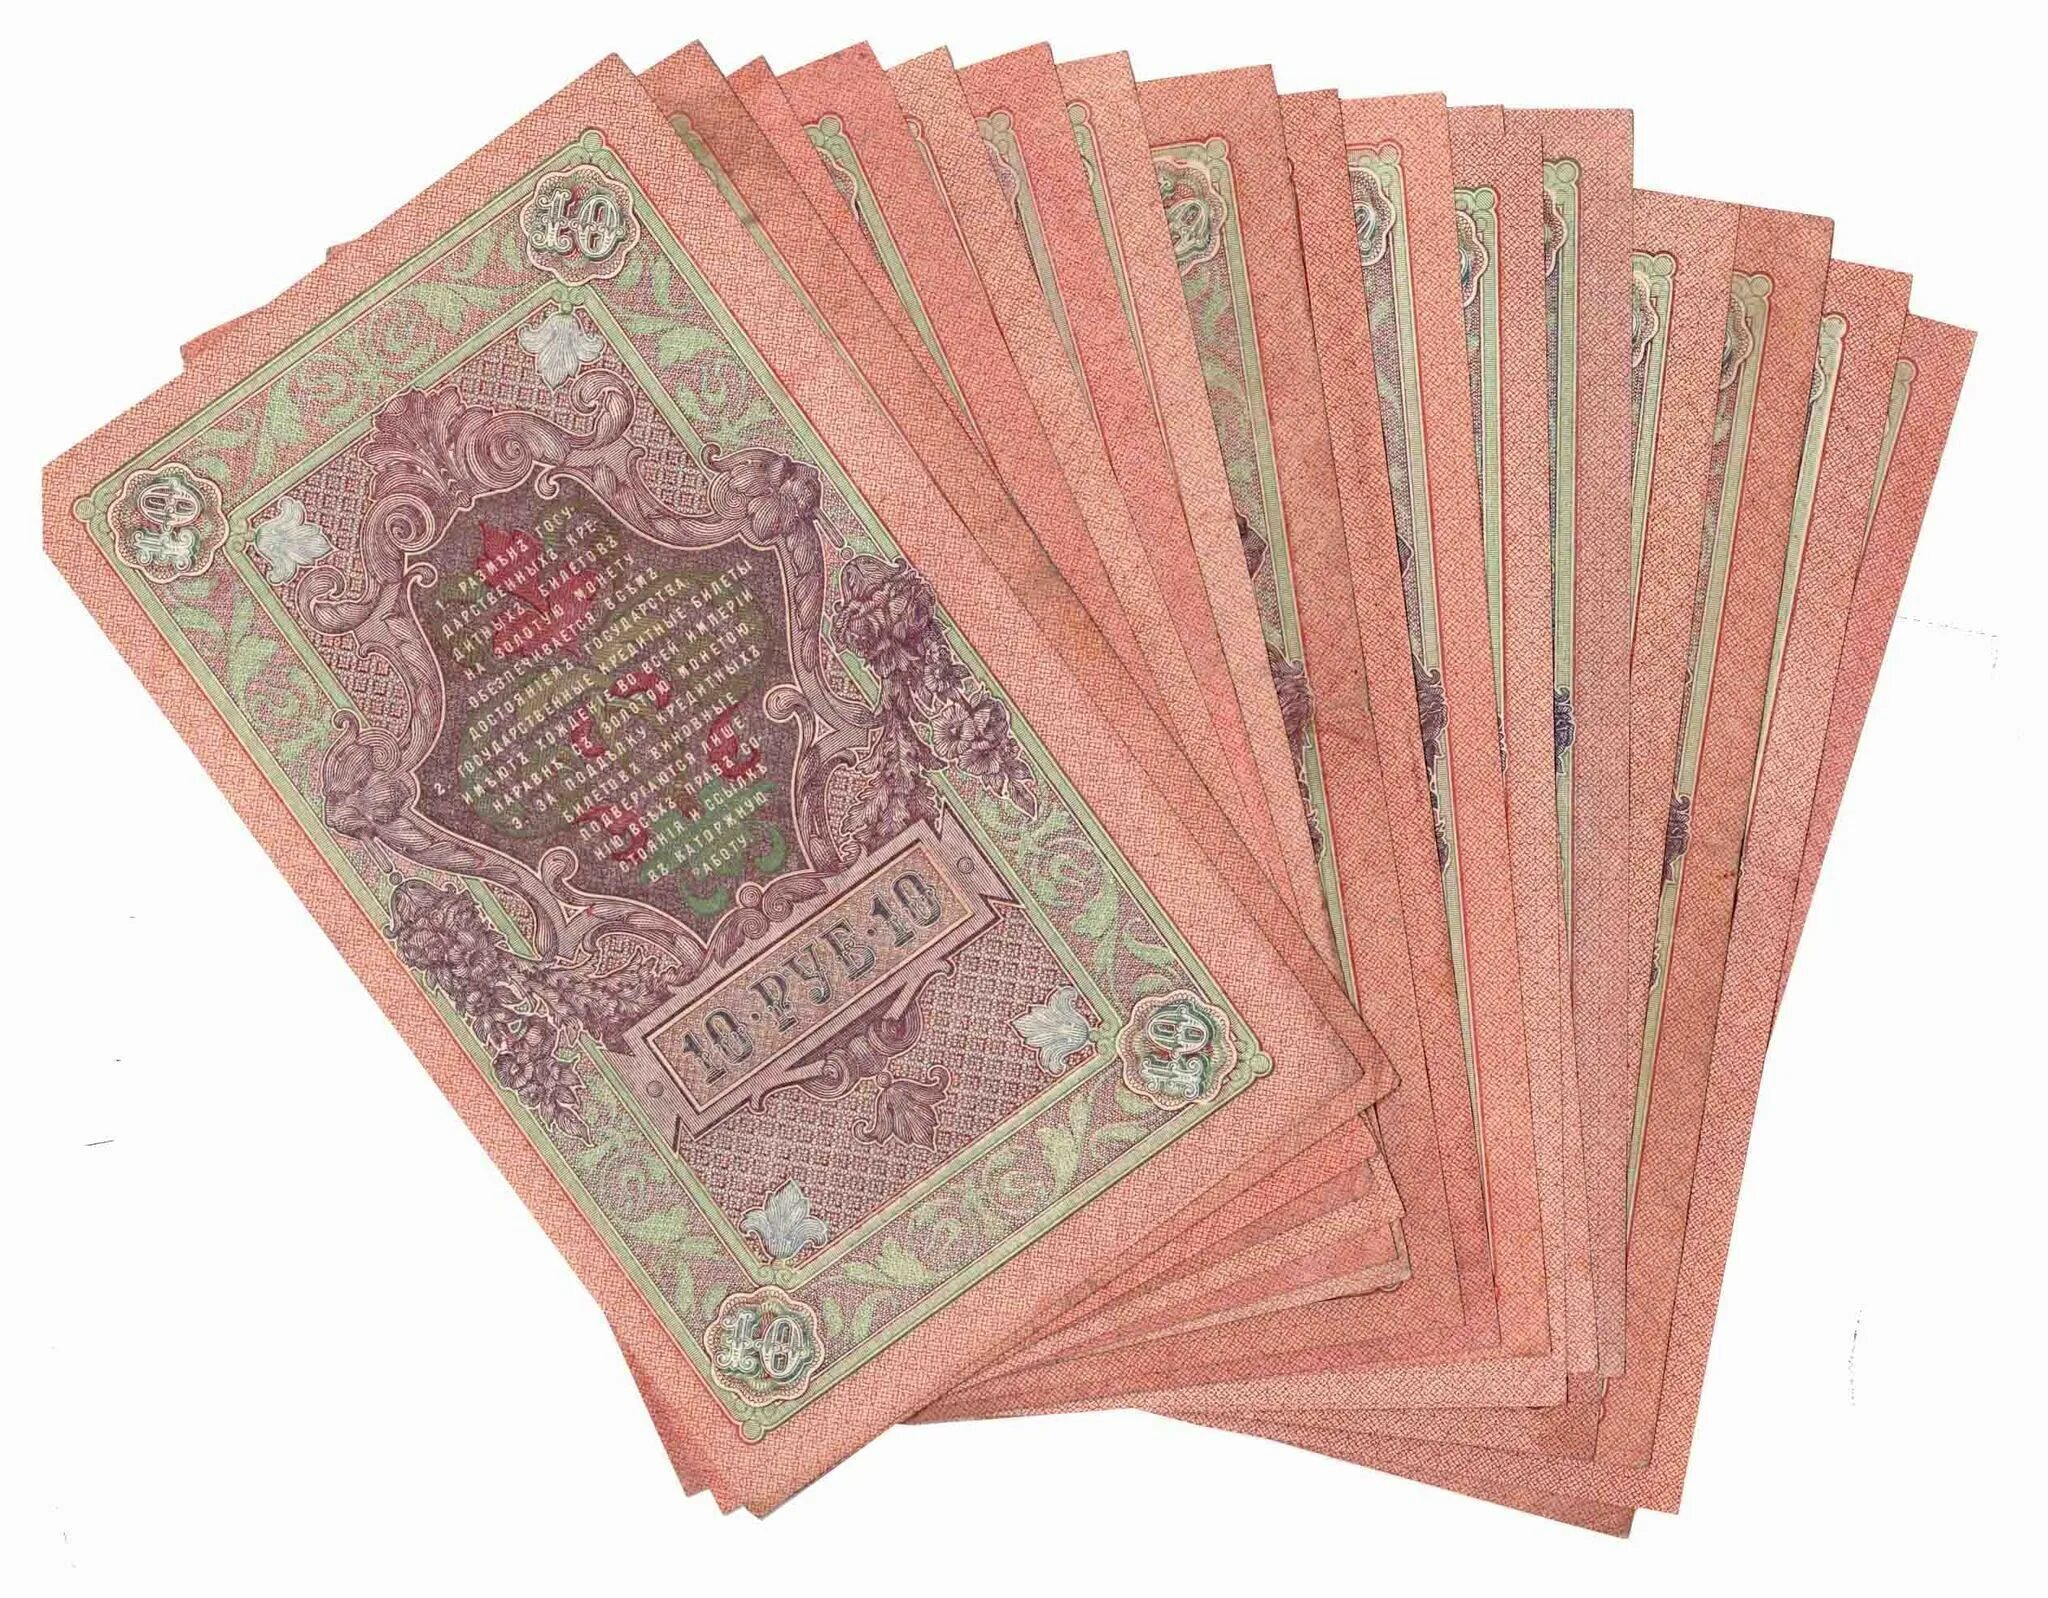 Кредитный билет 5 рублей 1909. Купюра 1909 года. Пачка царских банкнот. Кредитный билет 10 рублей 1909 года цена бумажный стоимость.